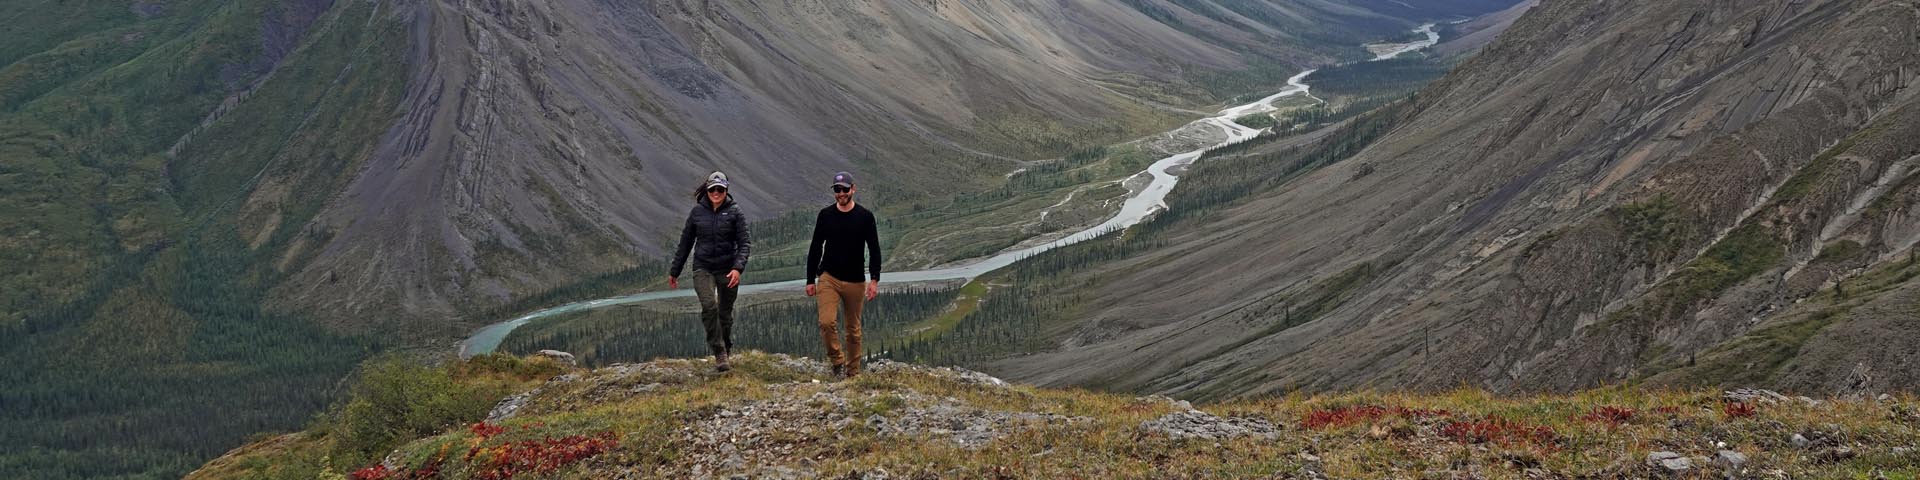 Une femme et un homme rient et marchent vers l’appareil photo, avec une vue d’une vallée fluviale et des montagnes environnantes en arrière-plan.